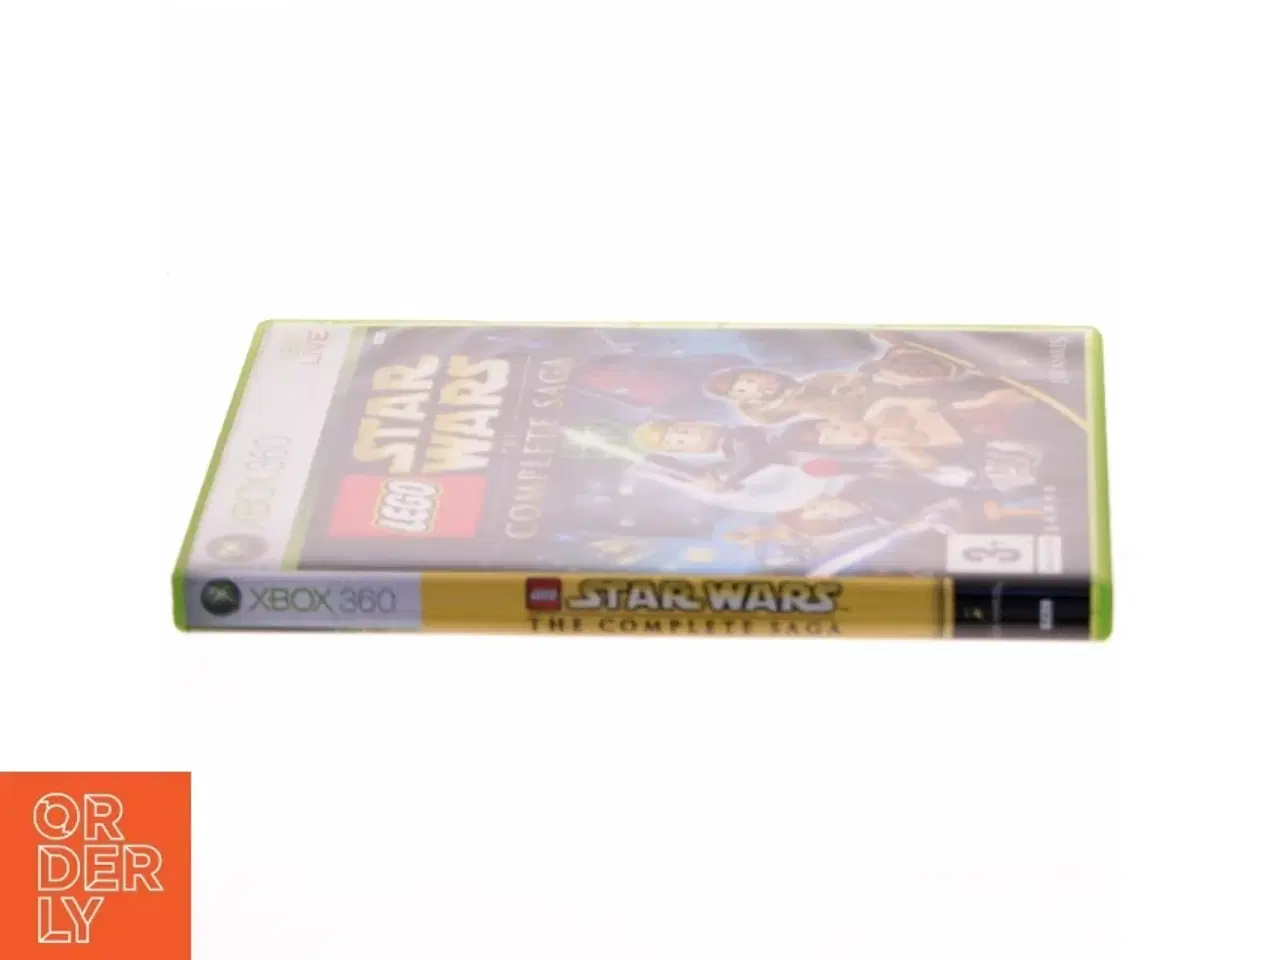 Billede 2 - LEGO Star Wars: The Complete Saga Xbox 360 spil fra LucasArts